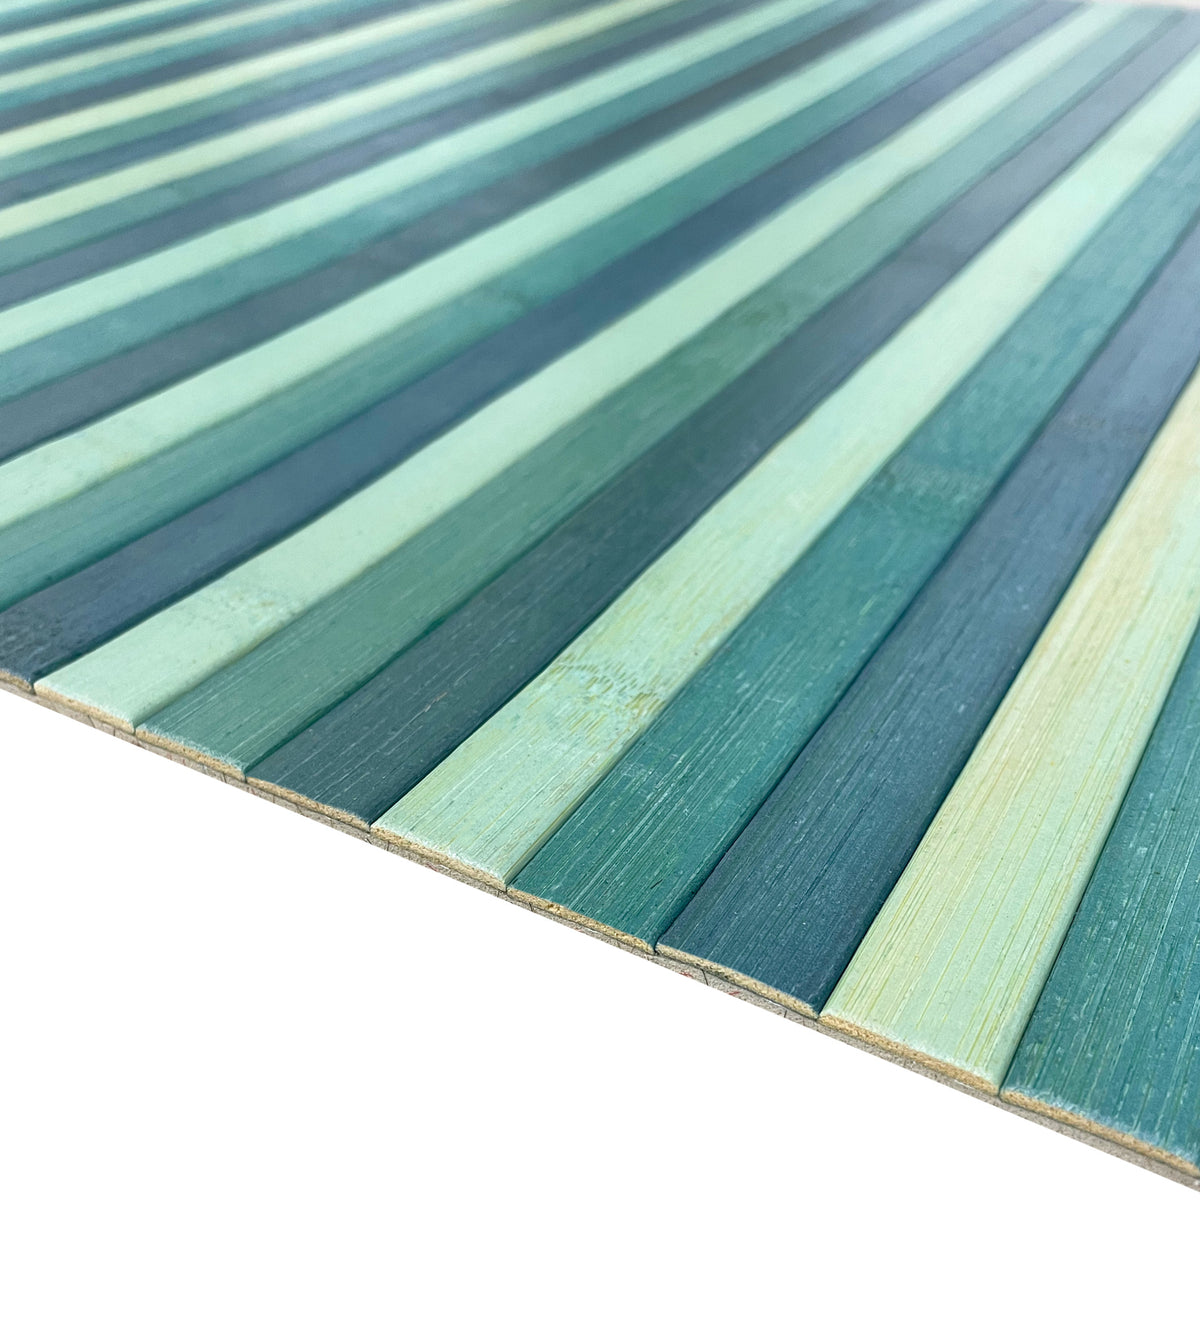 Passatoia per cucina o tappeto da ingresso in Vero Bamboo Naturale 7 misure 7 colori